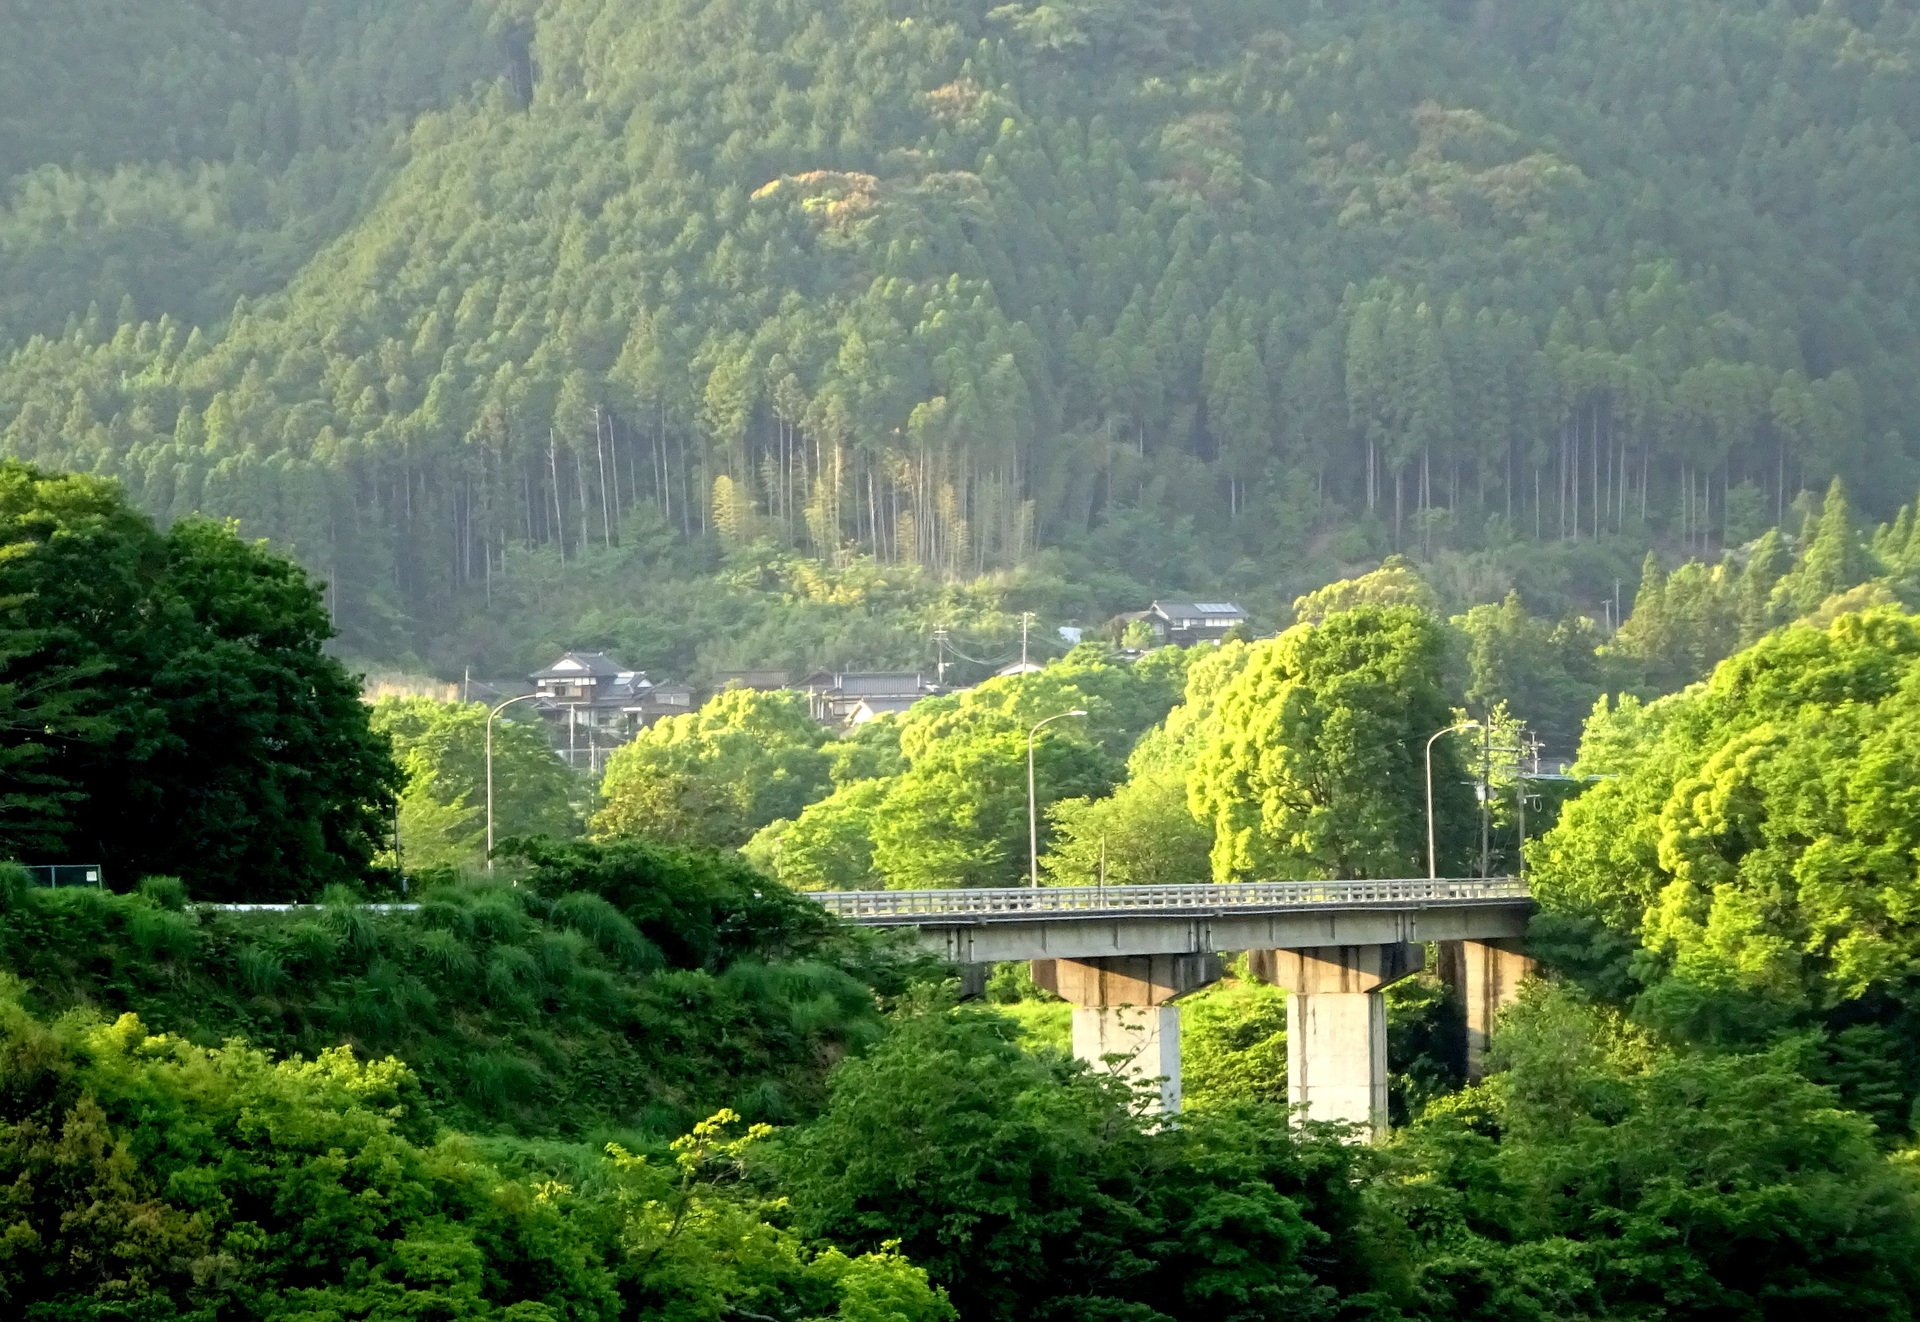 日本の風景 山間部の橋と山の集落 壁紙19x1322 壁紙館